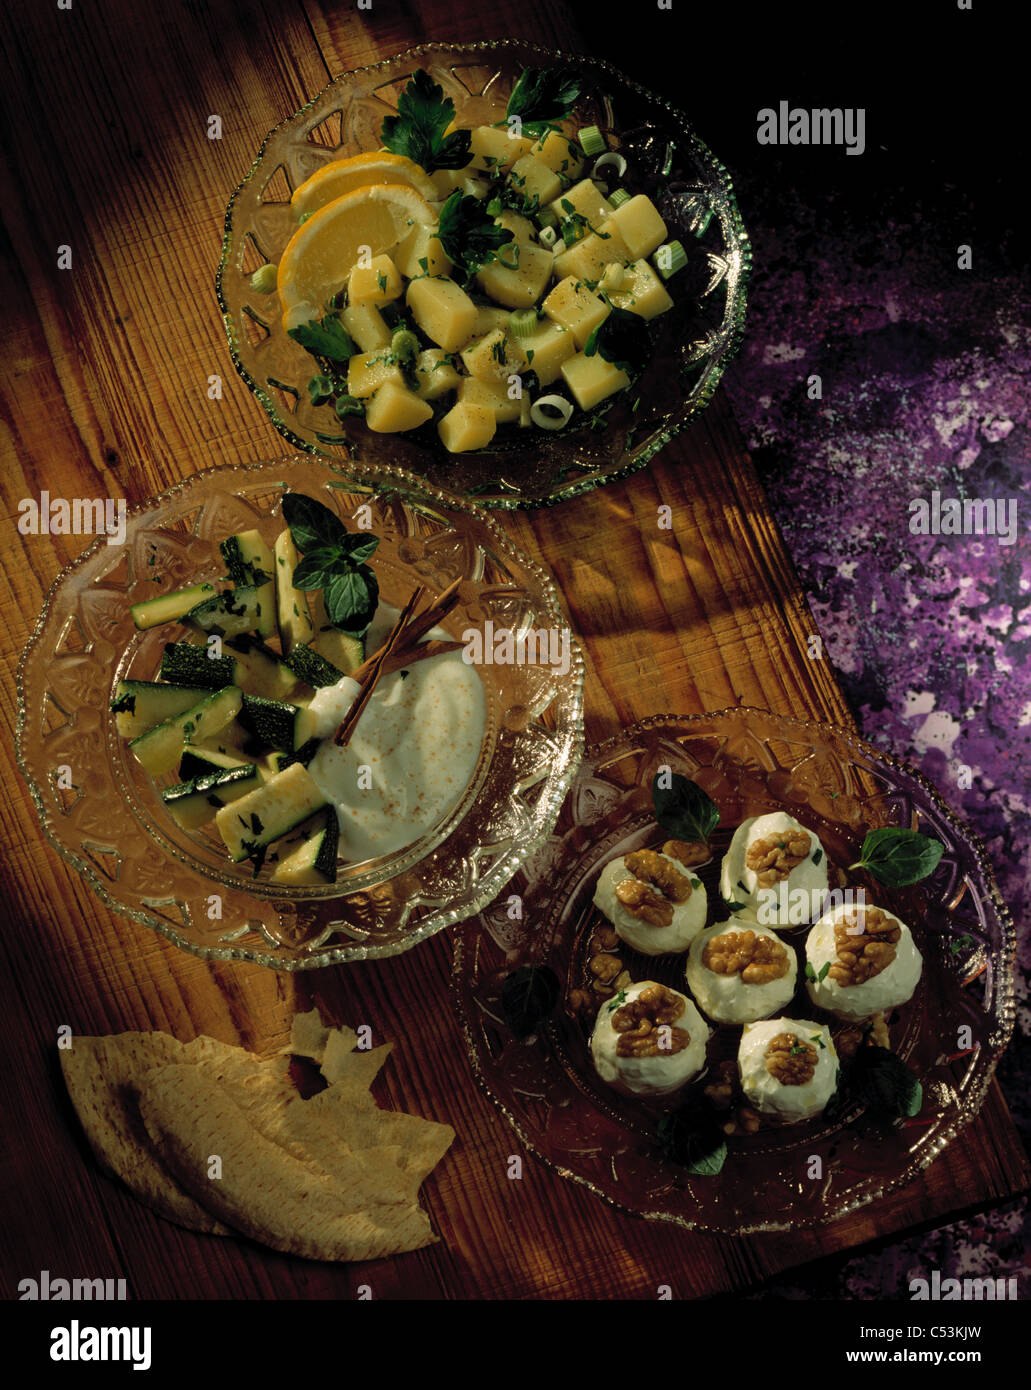 Tableau : Courgette avec du yogourt - cannelle - pomme de terre - arabe / sauce à salade / yaourt aux noix boules Banque D'Images